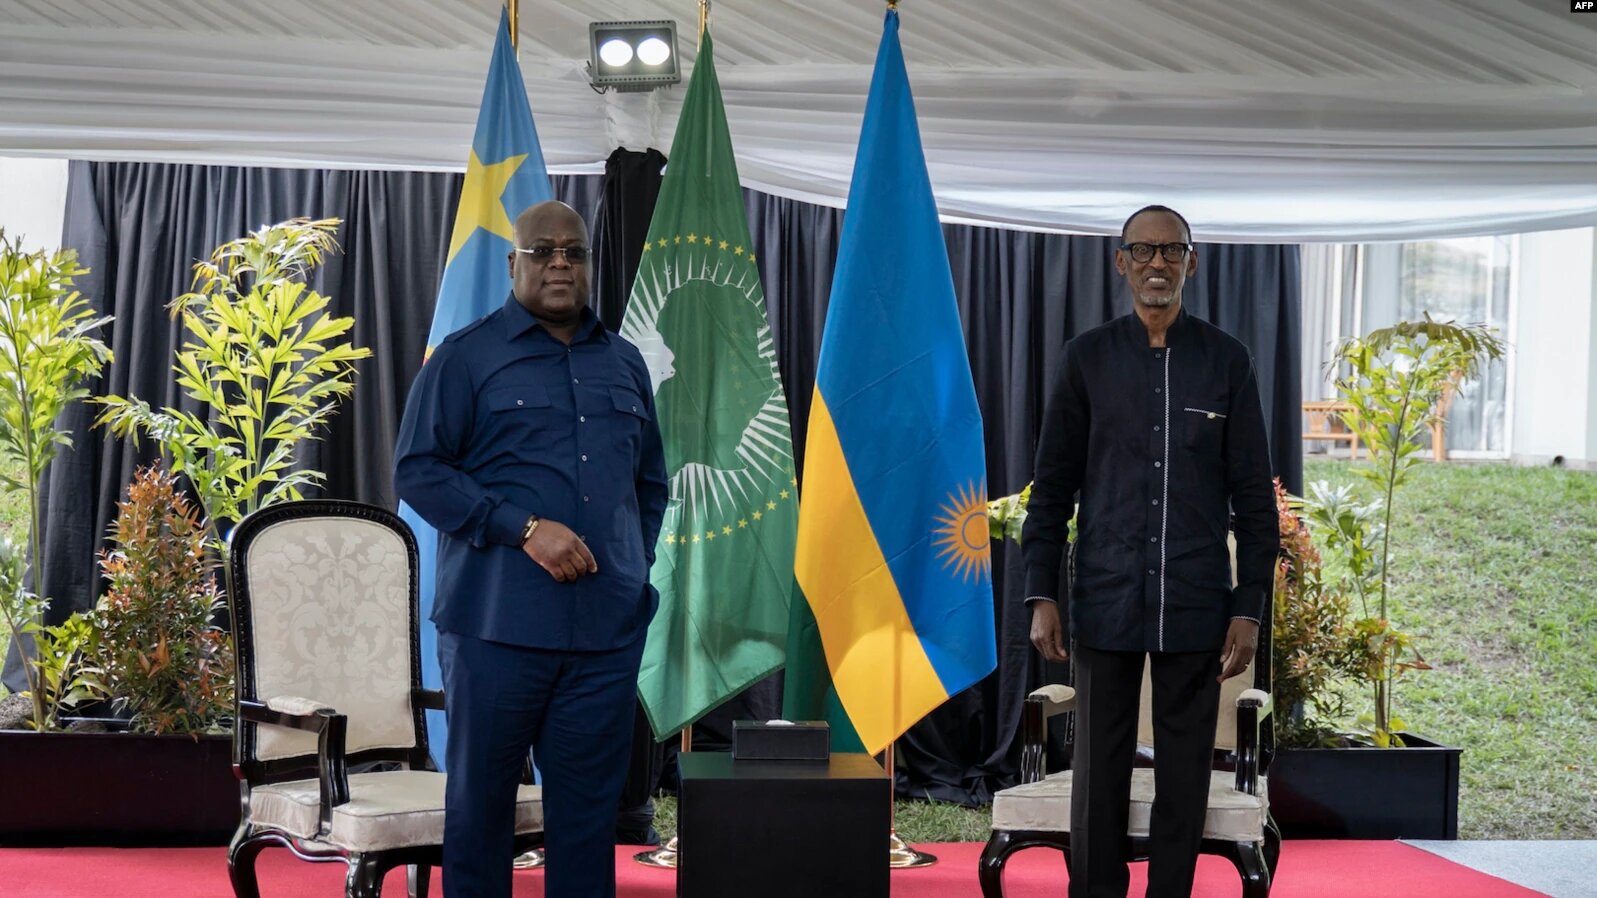 Le président rwandais Paul Kagame et le président de la République démocratique du Congo - RDC Félix Tshisekedi (à gauche)